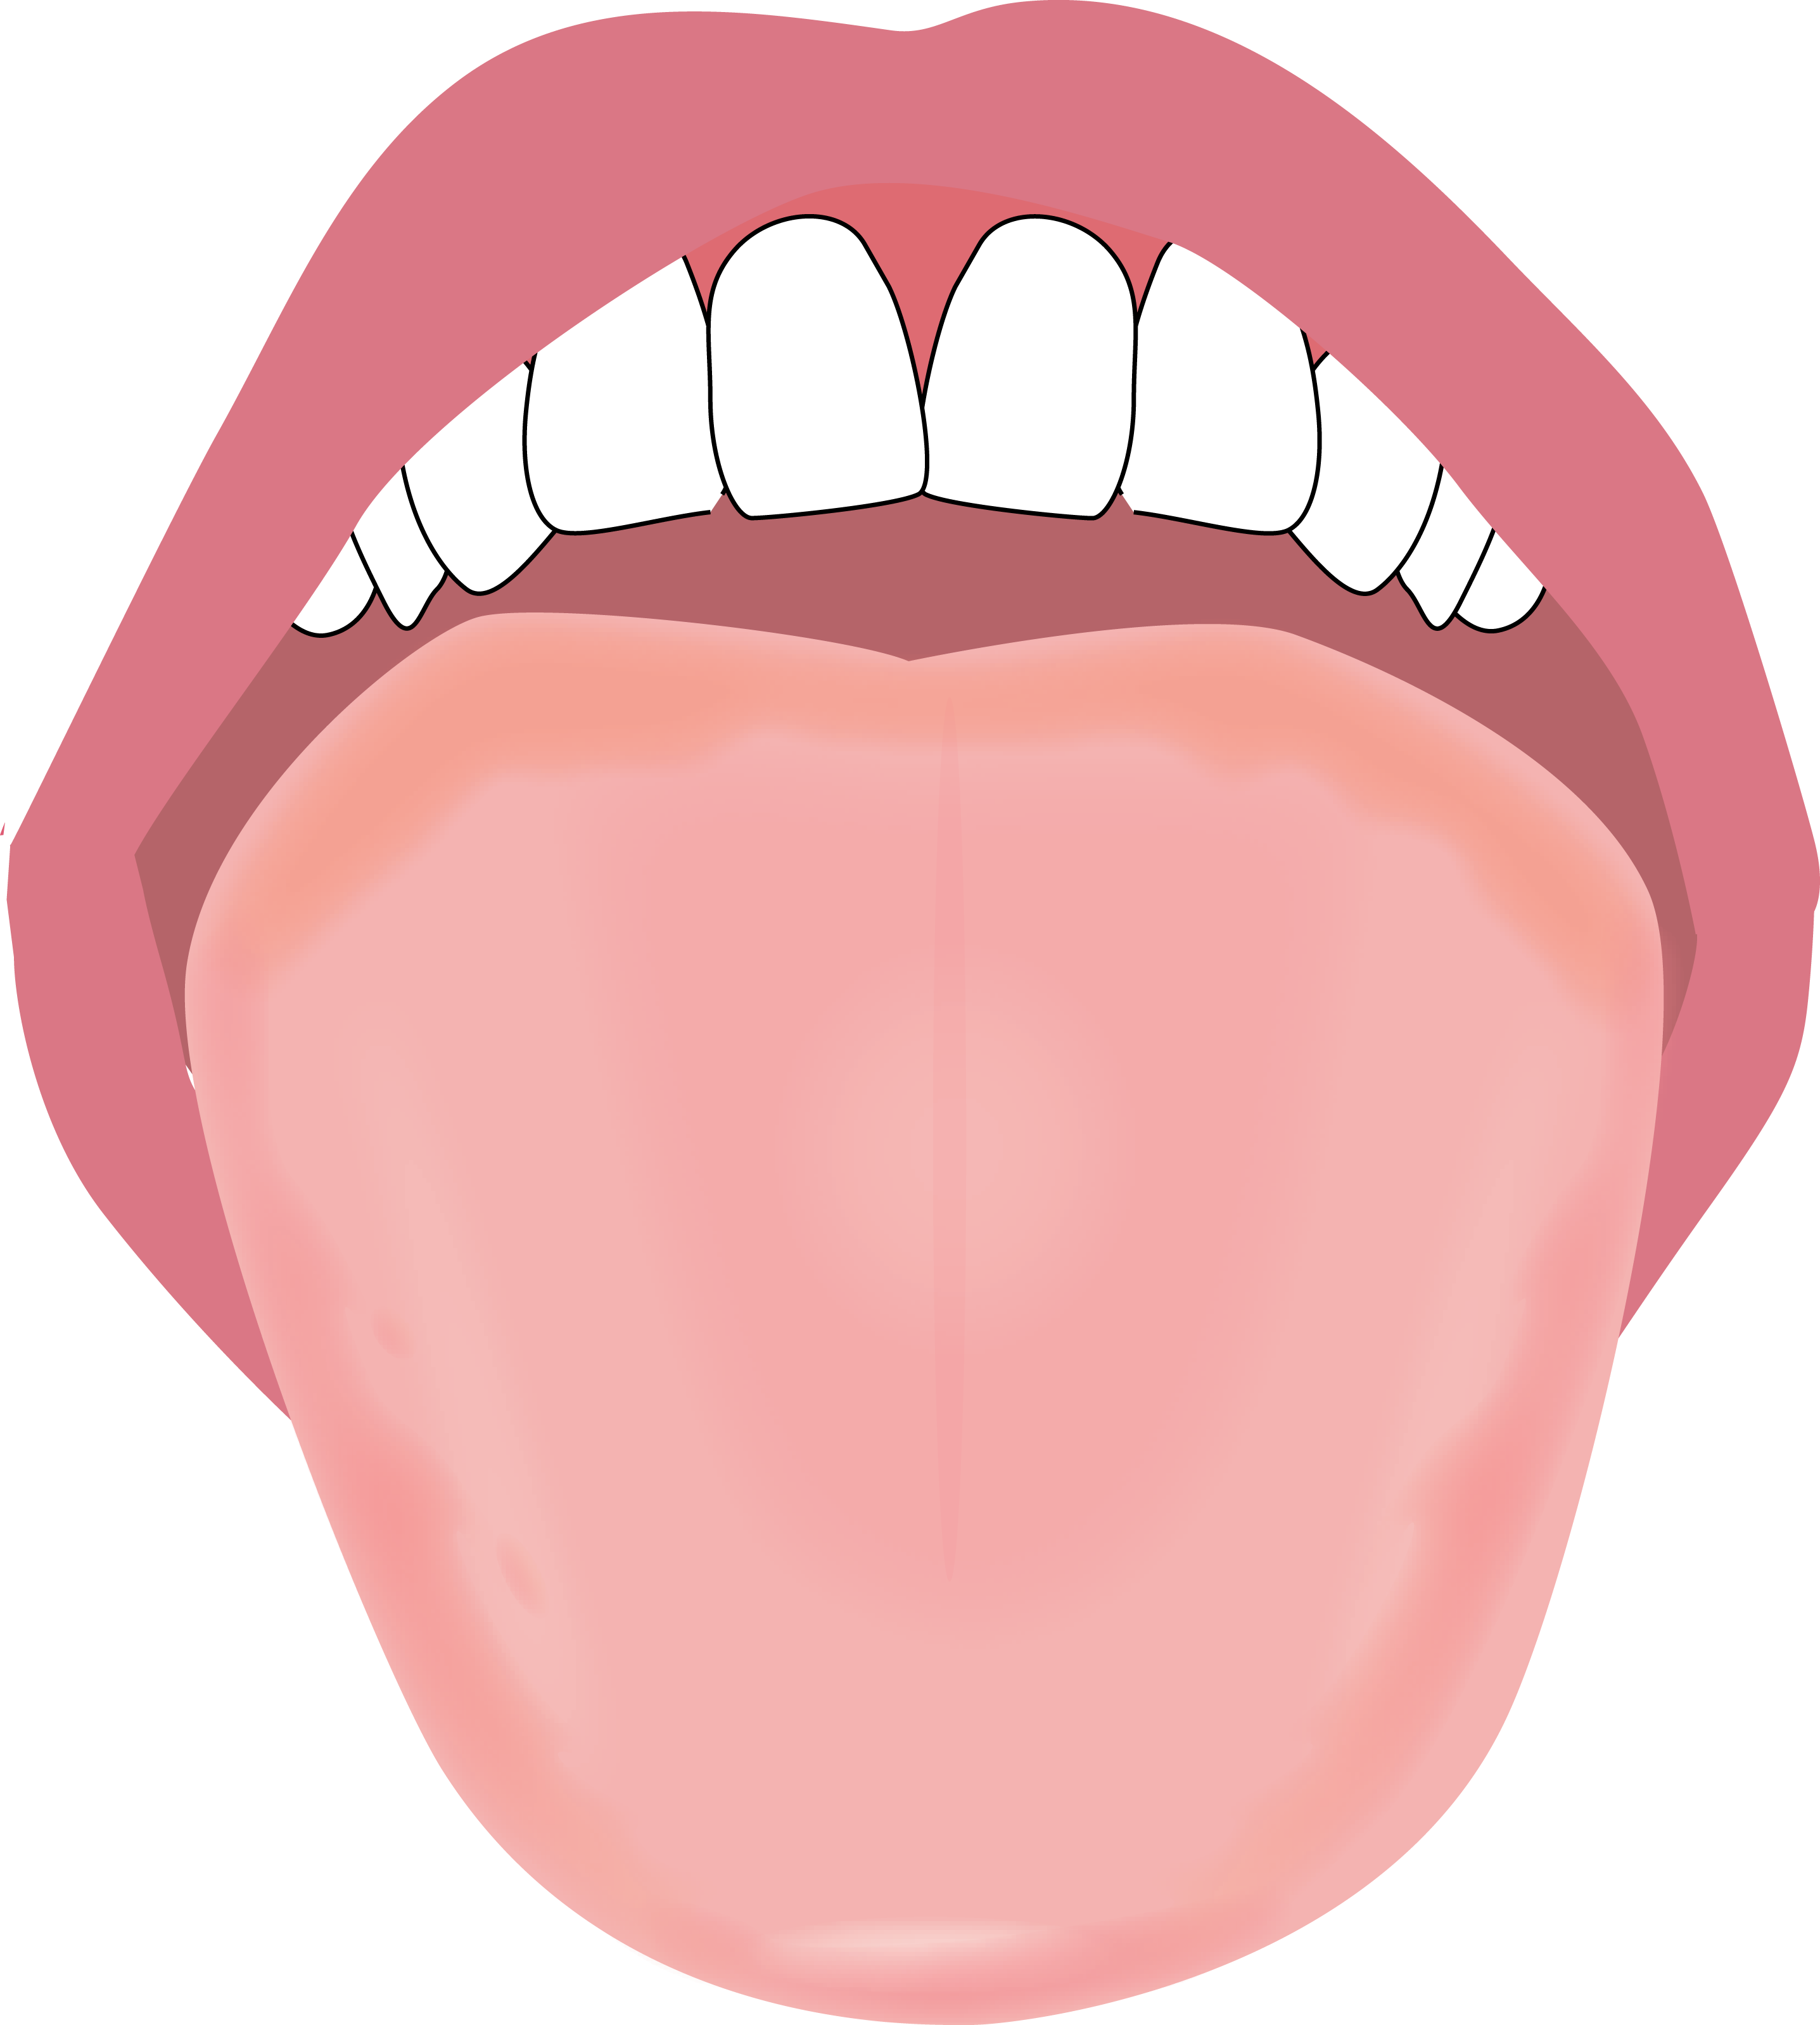 舌のイラスト描きました やましろ歯科 口腔外科 口腔外科 口腔内科 福岡で親知らずの抜歯 ドライマウス 睡眠時無呼吸症候群 口腔がん健診のことならやましろ歯科 口腔外科へ 日本口腔外科学会認定専門医が治療します